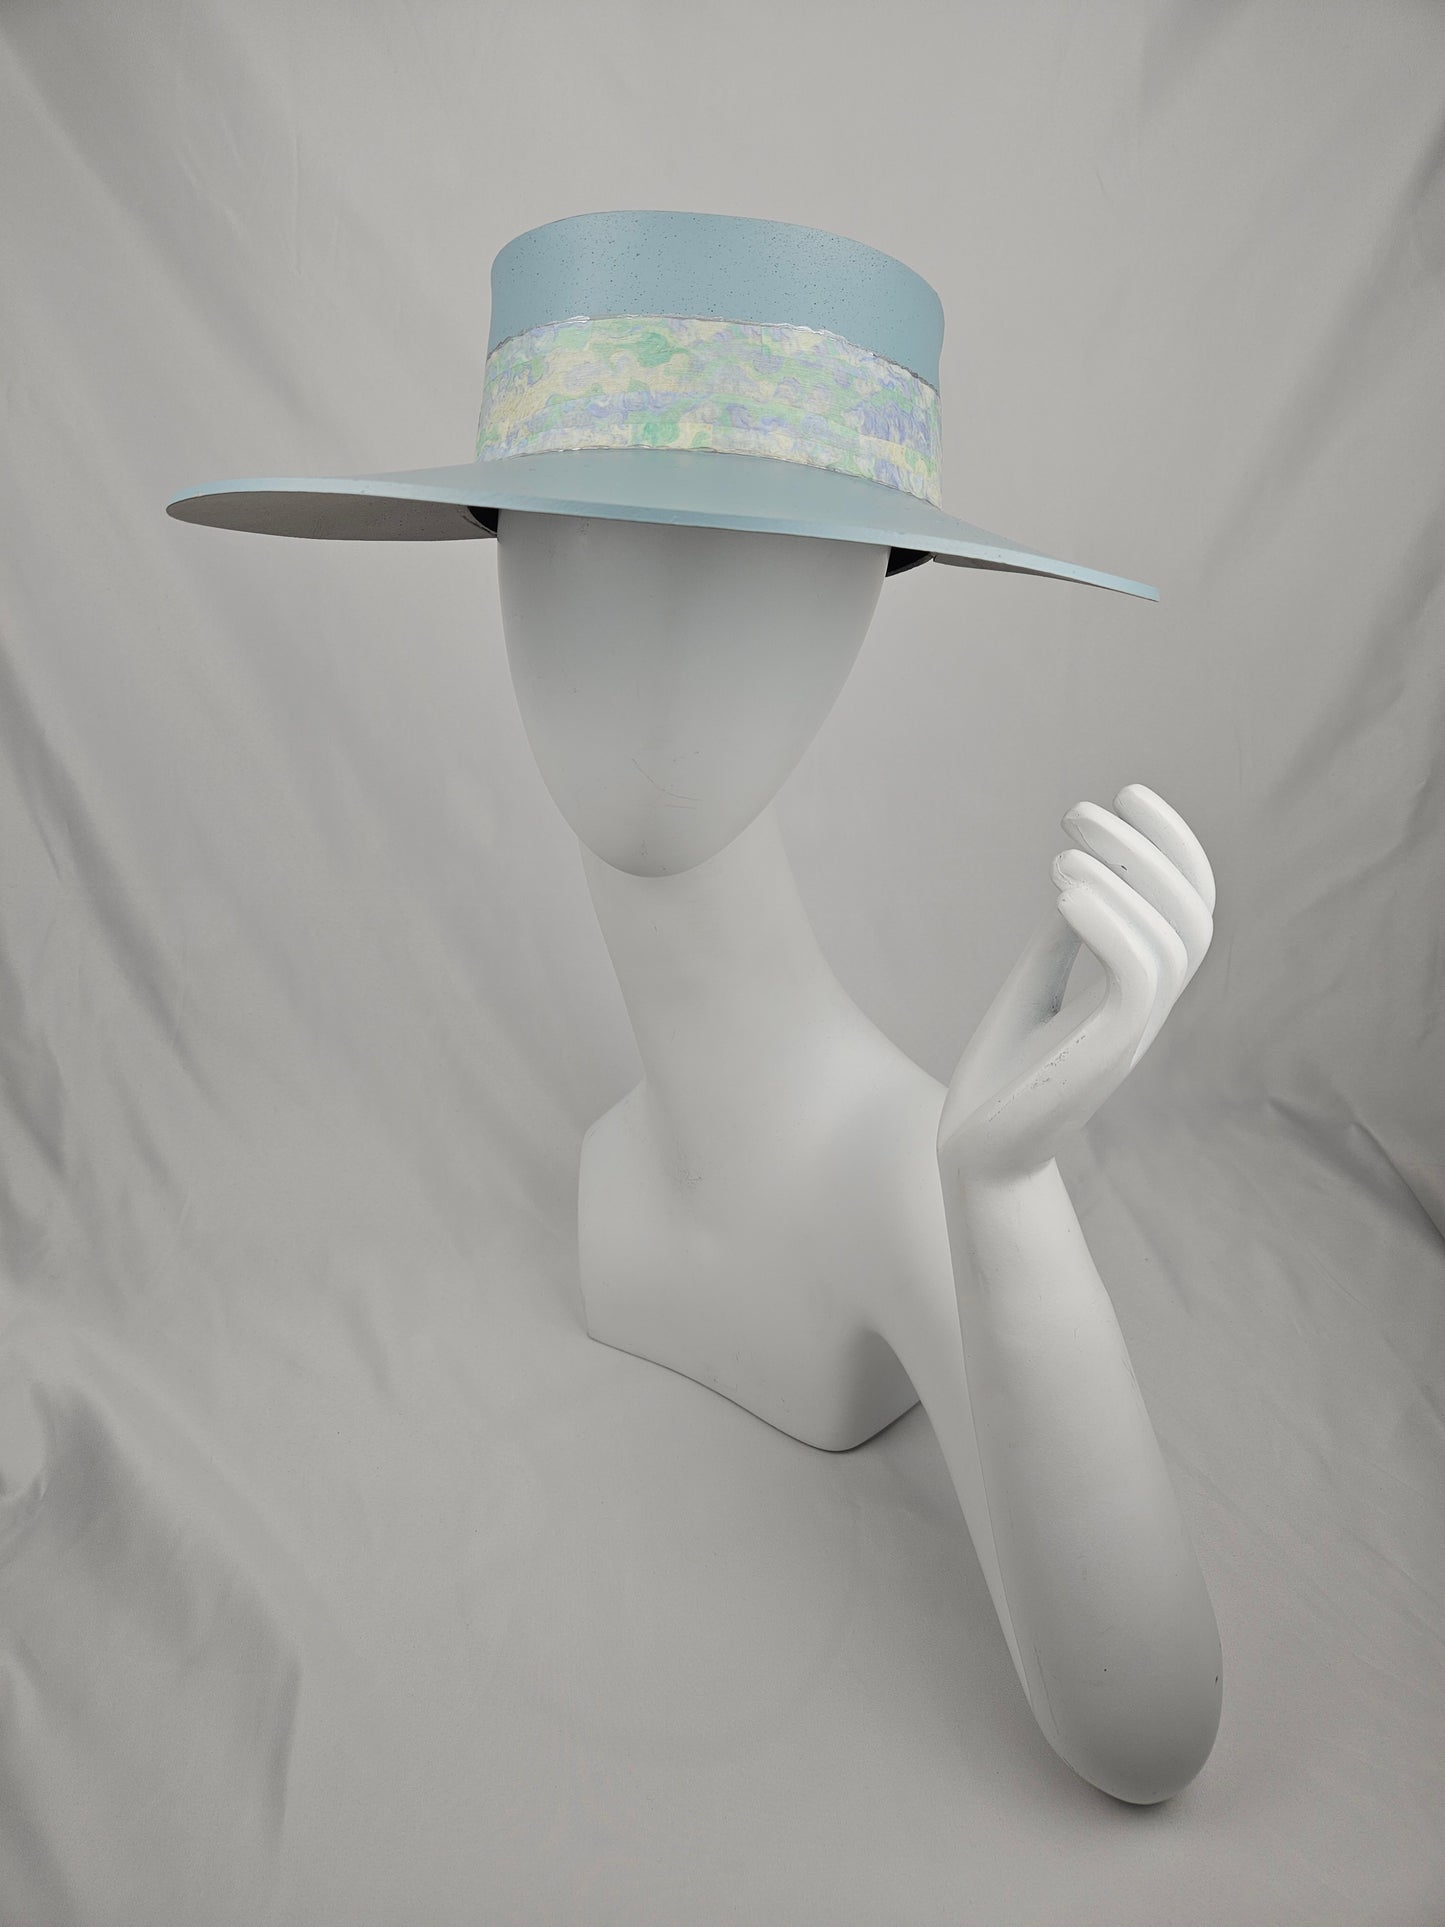 Tall Soft Blue Audrey Foam Sun Visor Hat with Pastel Green Light Blue Band: 1950s, Walks, Brunch, Asian, Golf, Easter, Church, No Headache, Derby